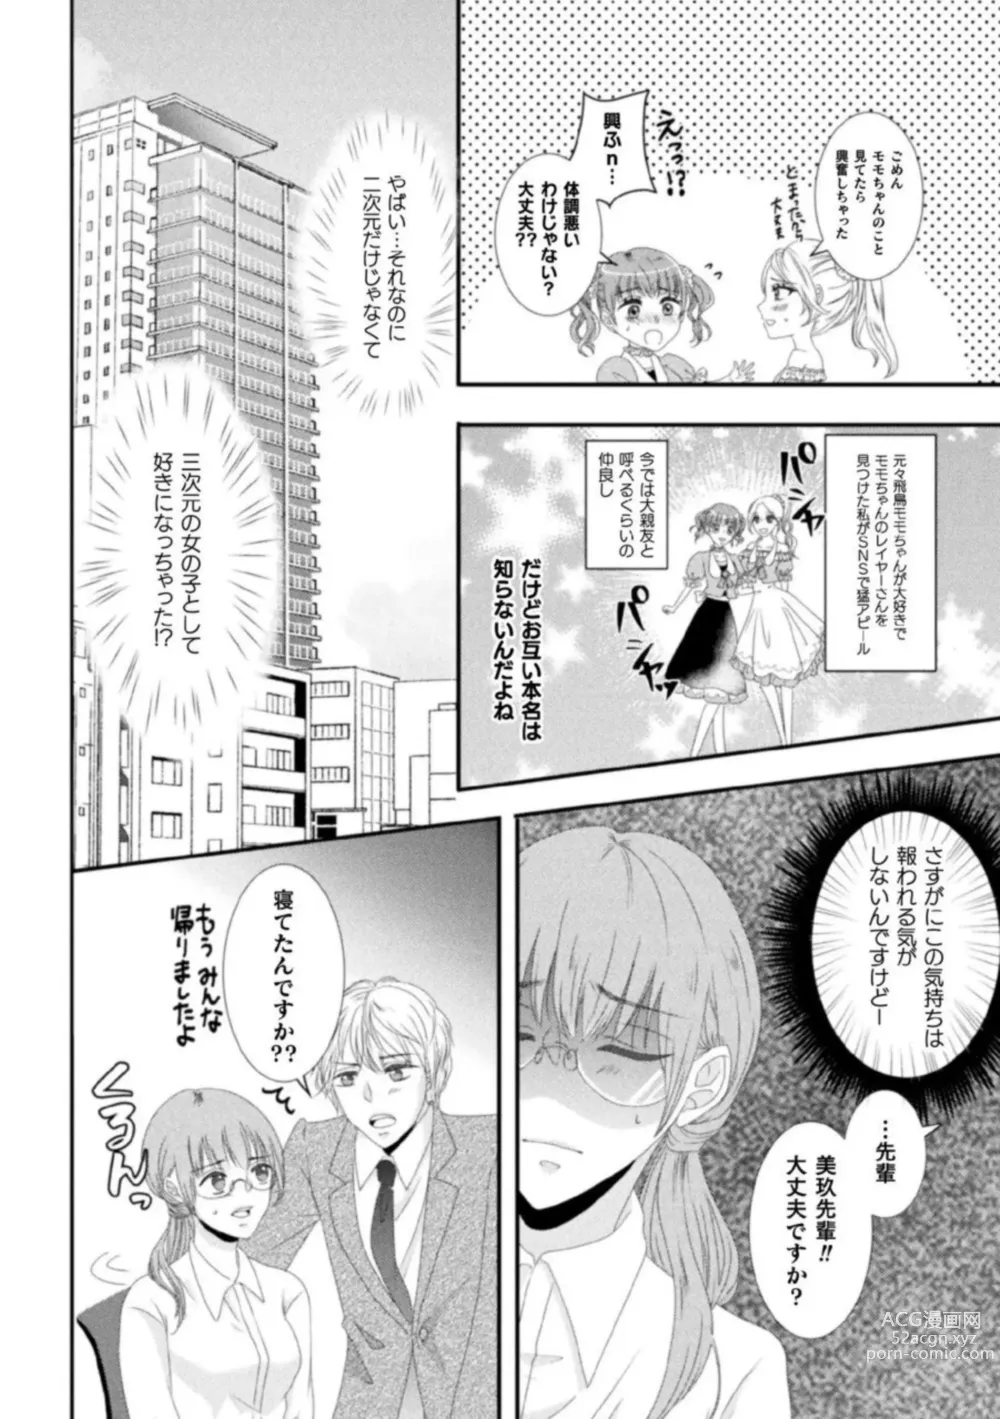 Page 18 of manga Shokora Shukureansorojīshokorashukureansorojī Docchi ga Suki? Kireina o Nīsan ni Aisare Ecchi Vol.2